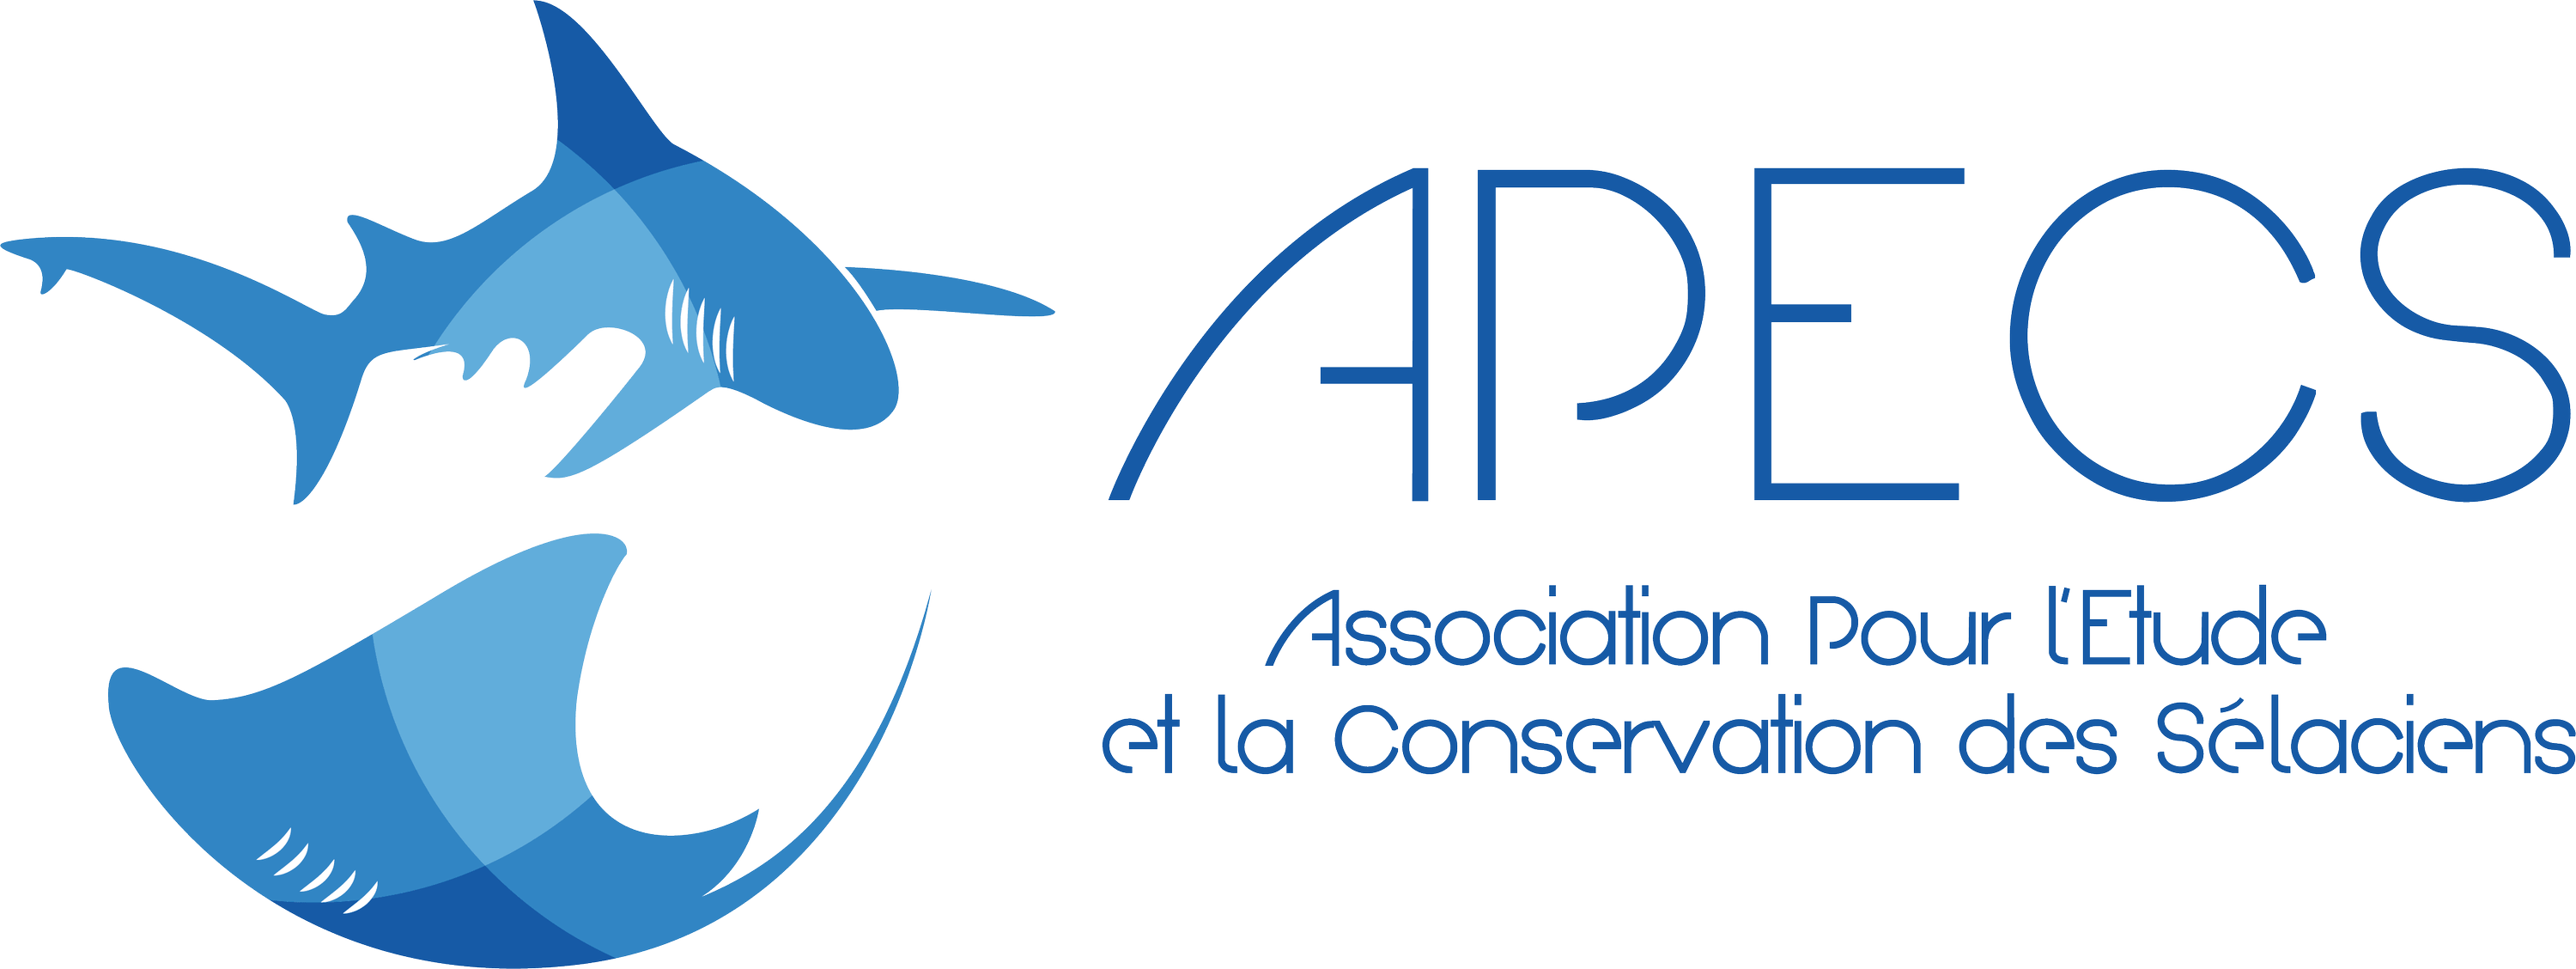 Association pour l'Etude et la Conservation des Selaciens (APECS)